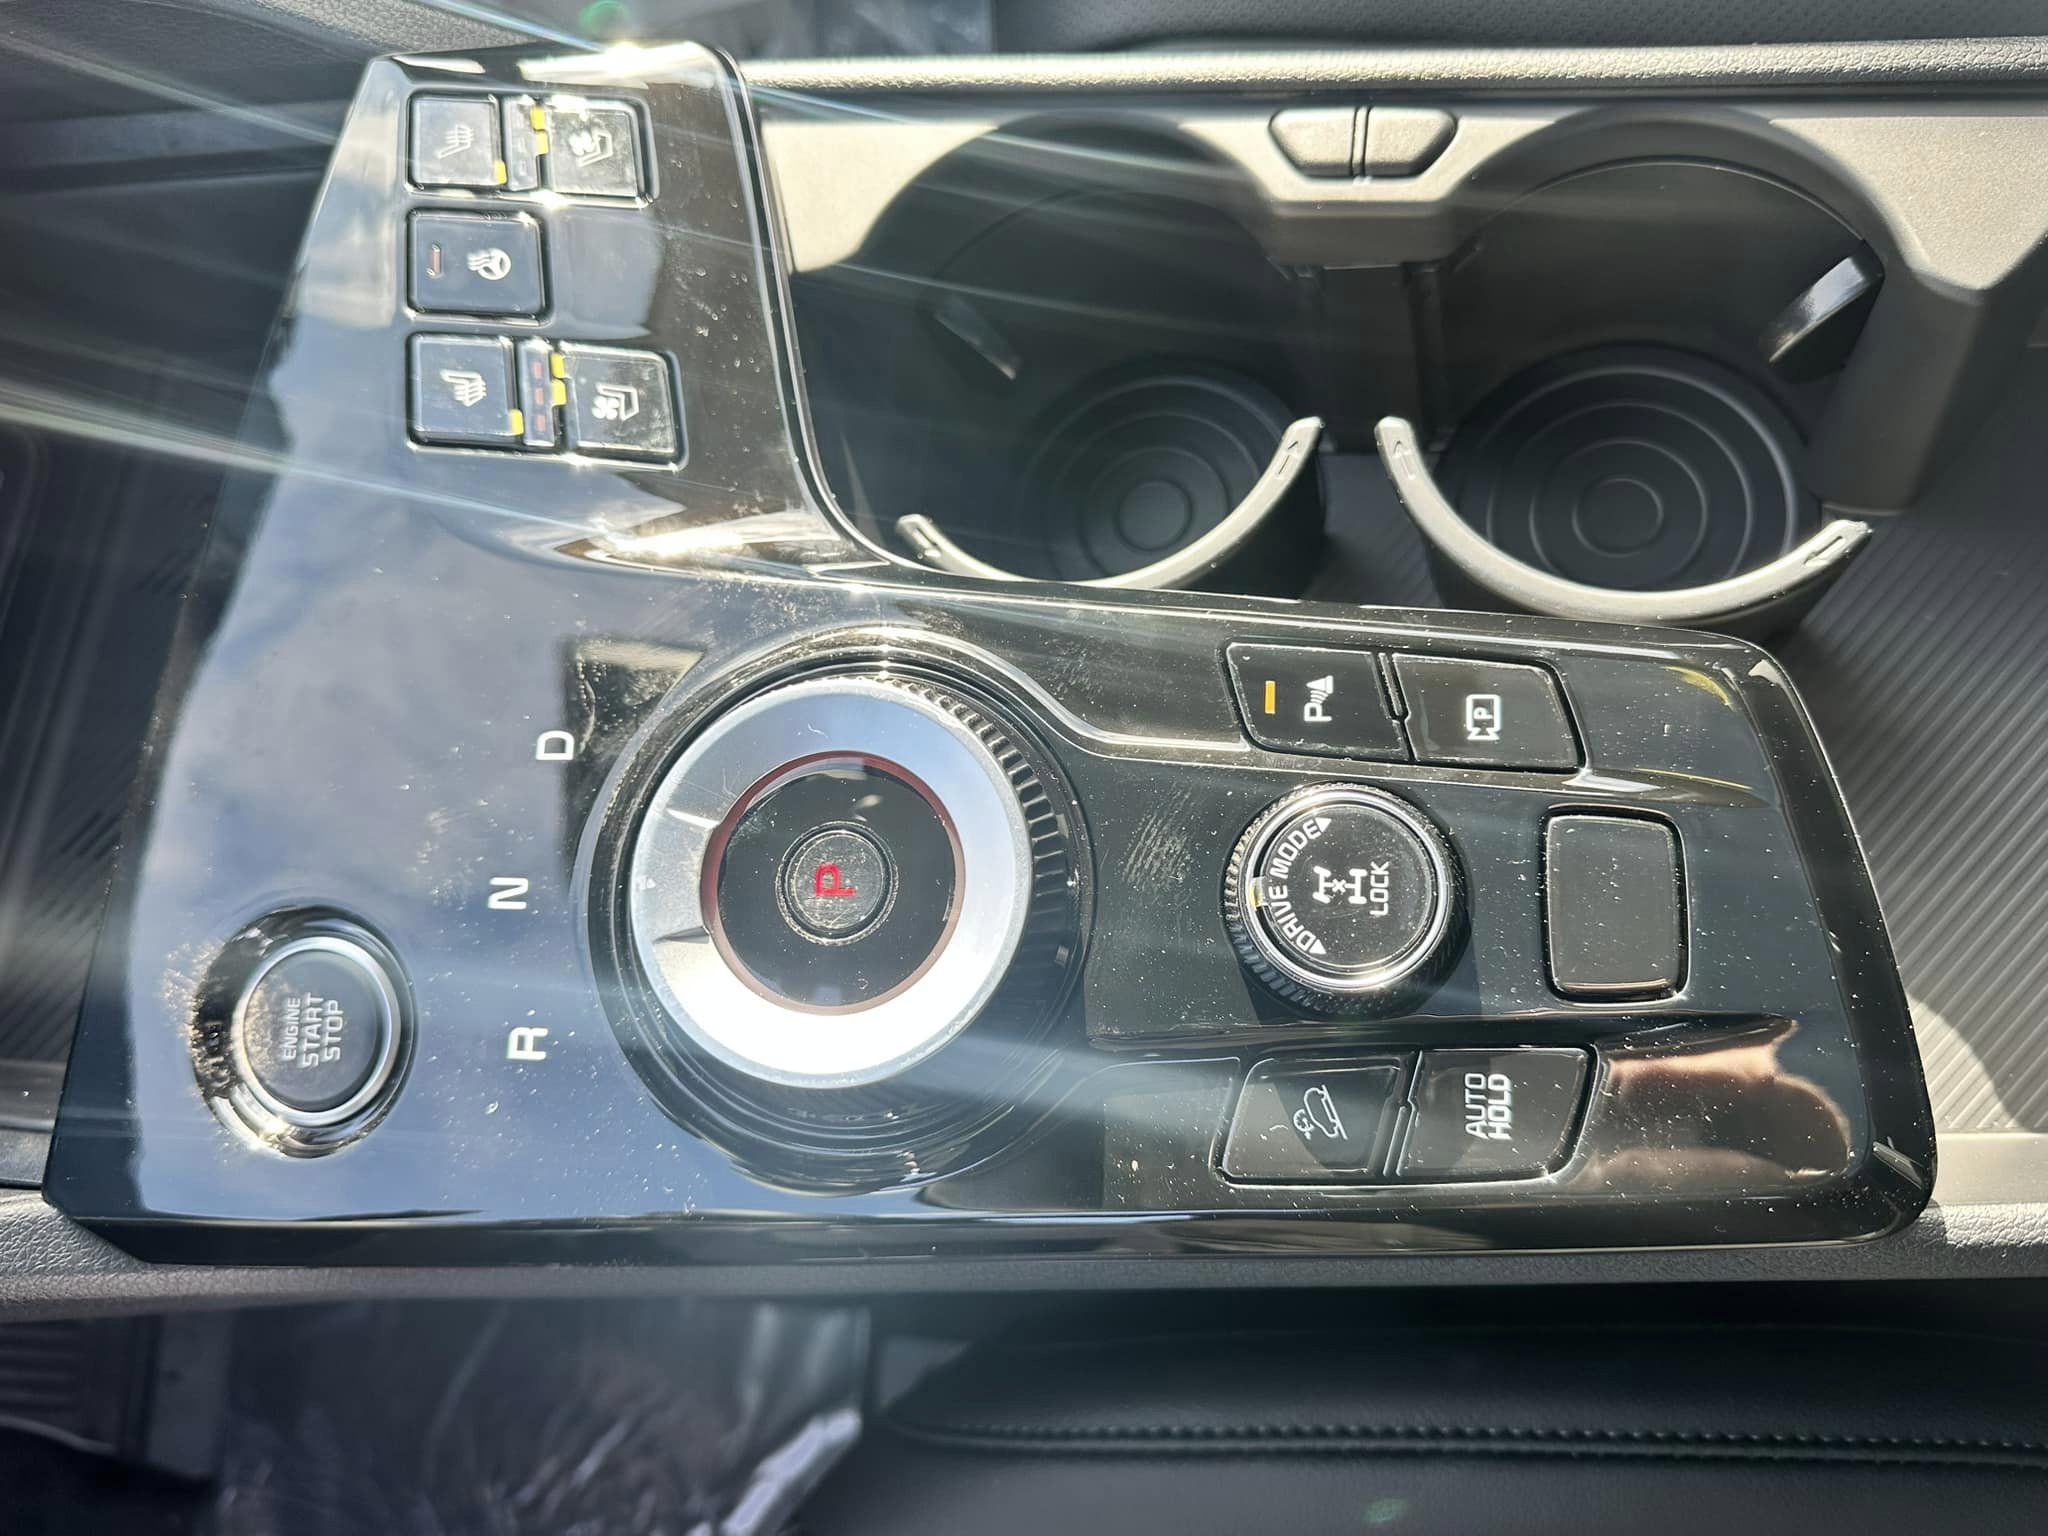 2024 Kia Sportage - Matte Gray/Black Interior - Hybrid HEV SX Prestige Trim - Front Center Console Controls